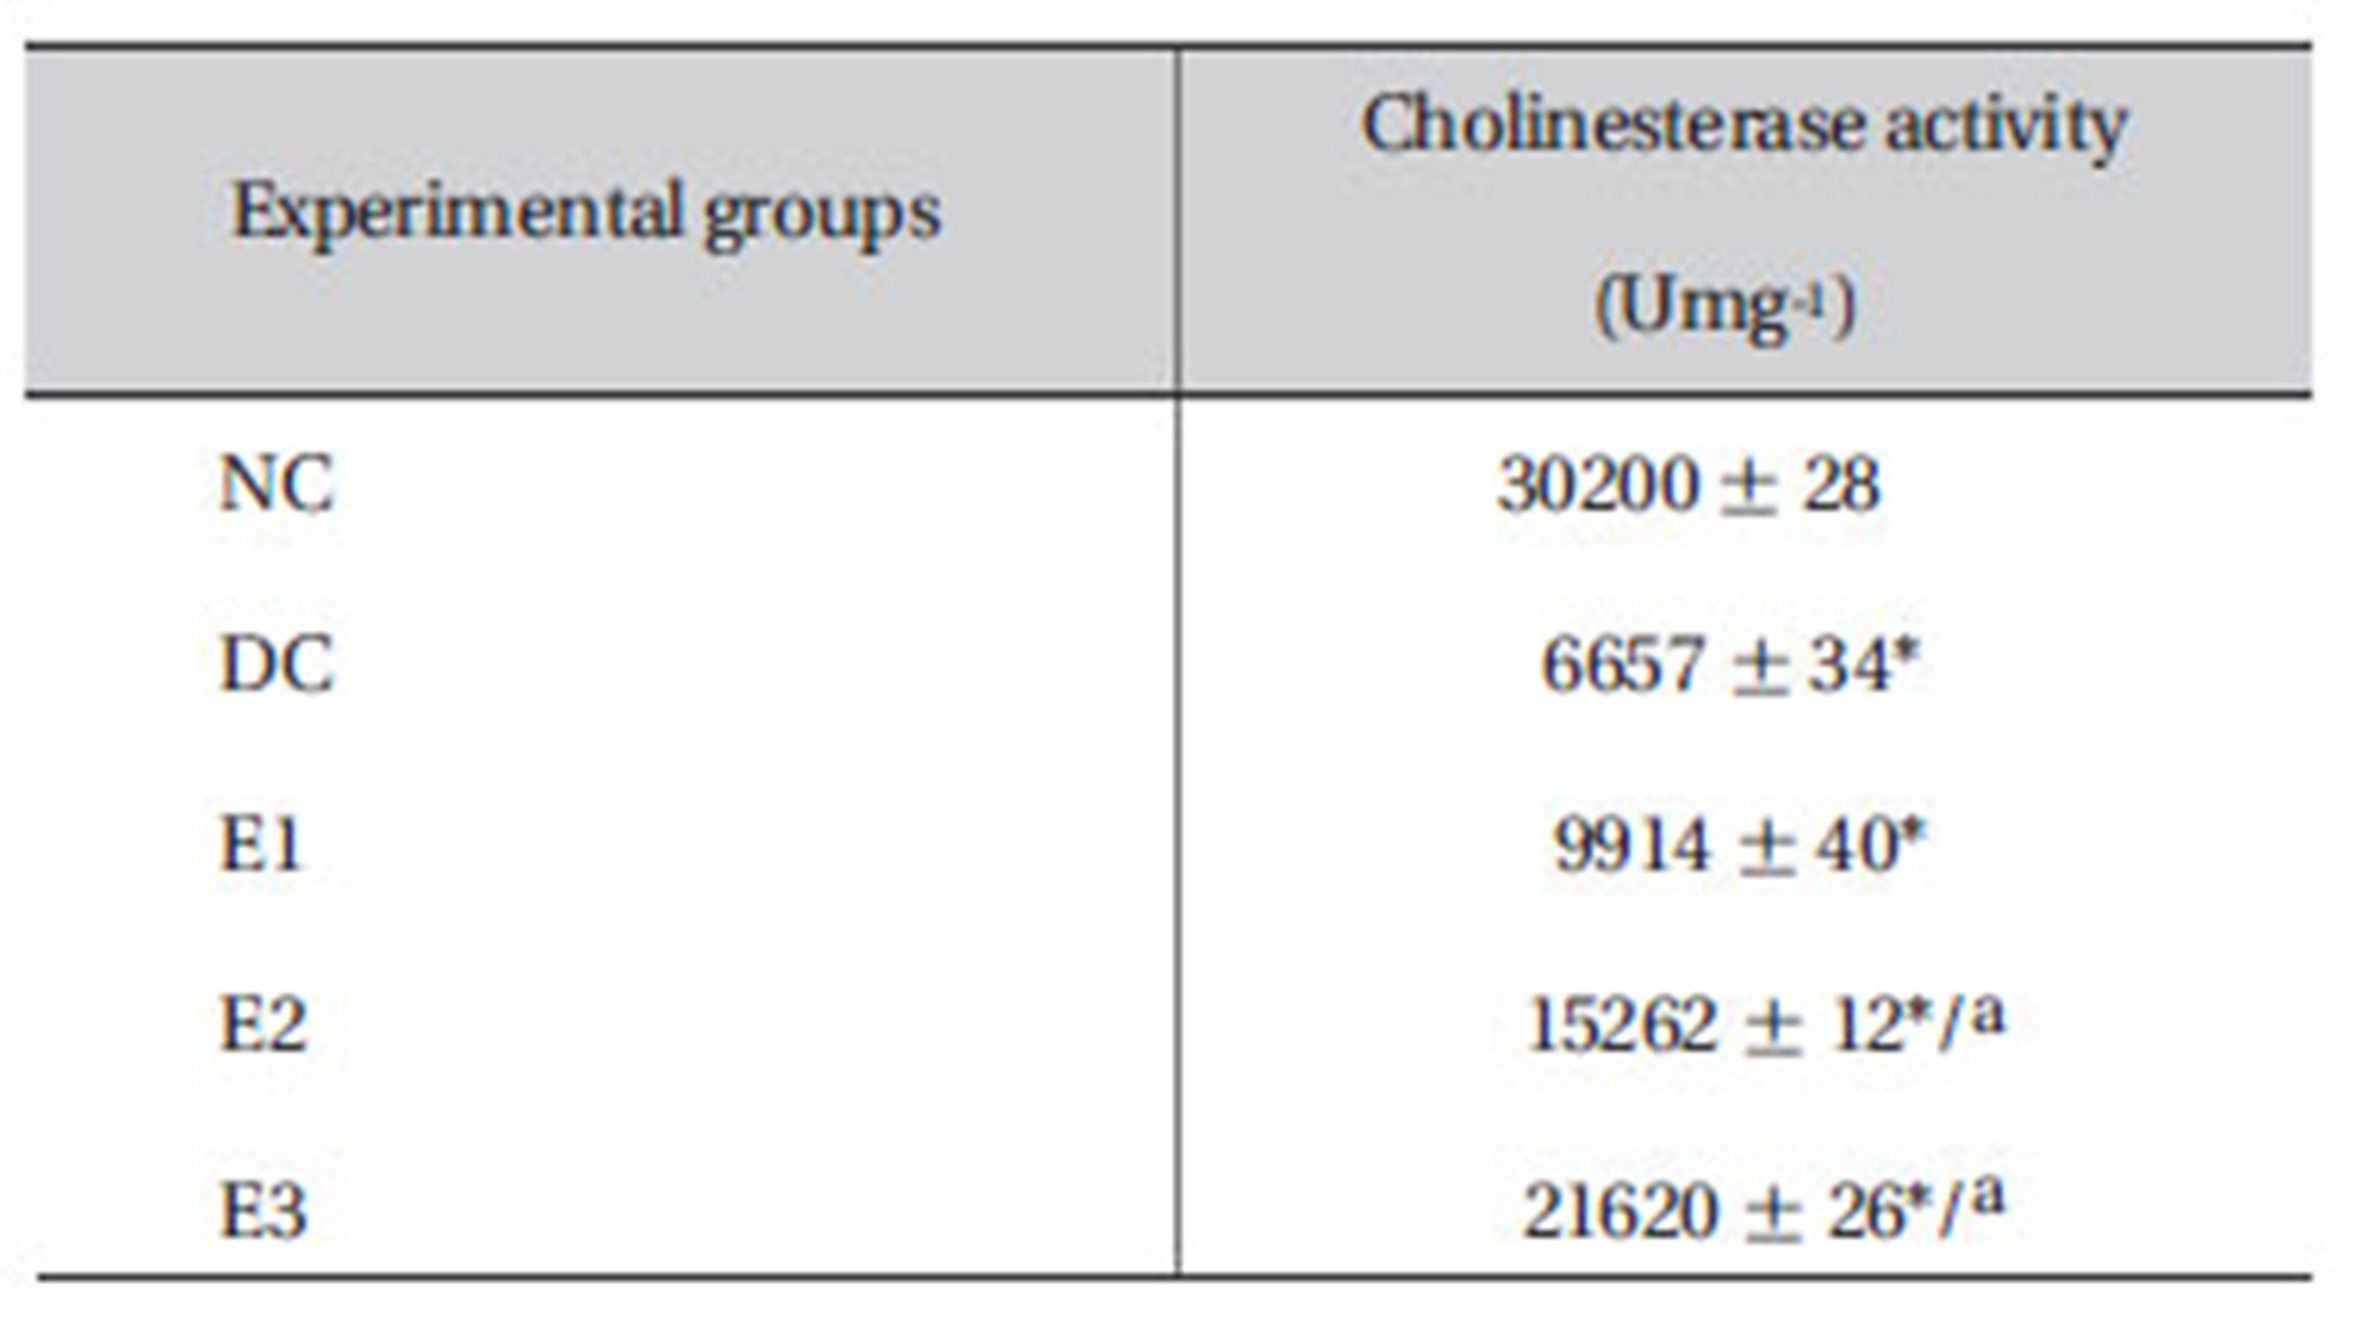 Effects of ZMFM on plasma cholinesterase activity on dim -ethoat-treated rats